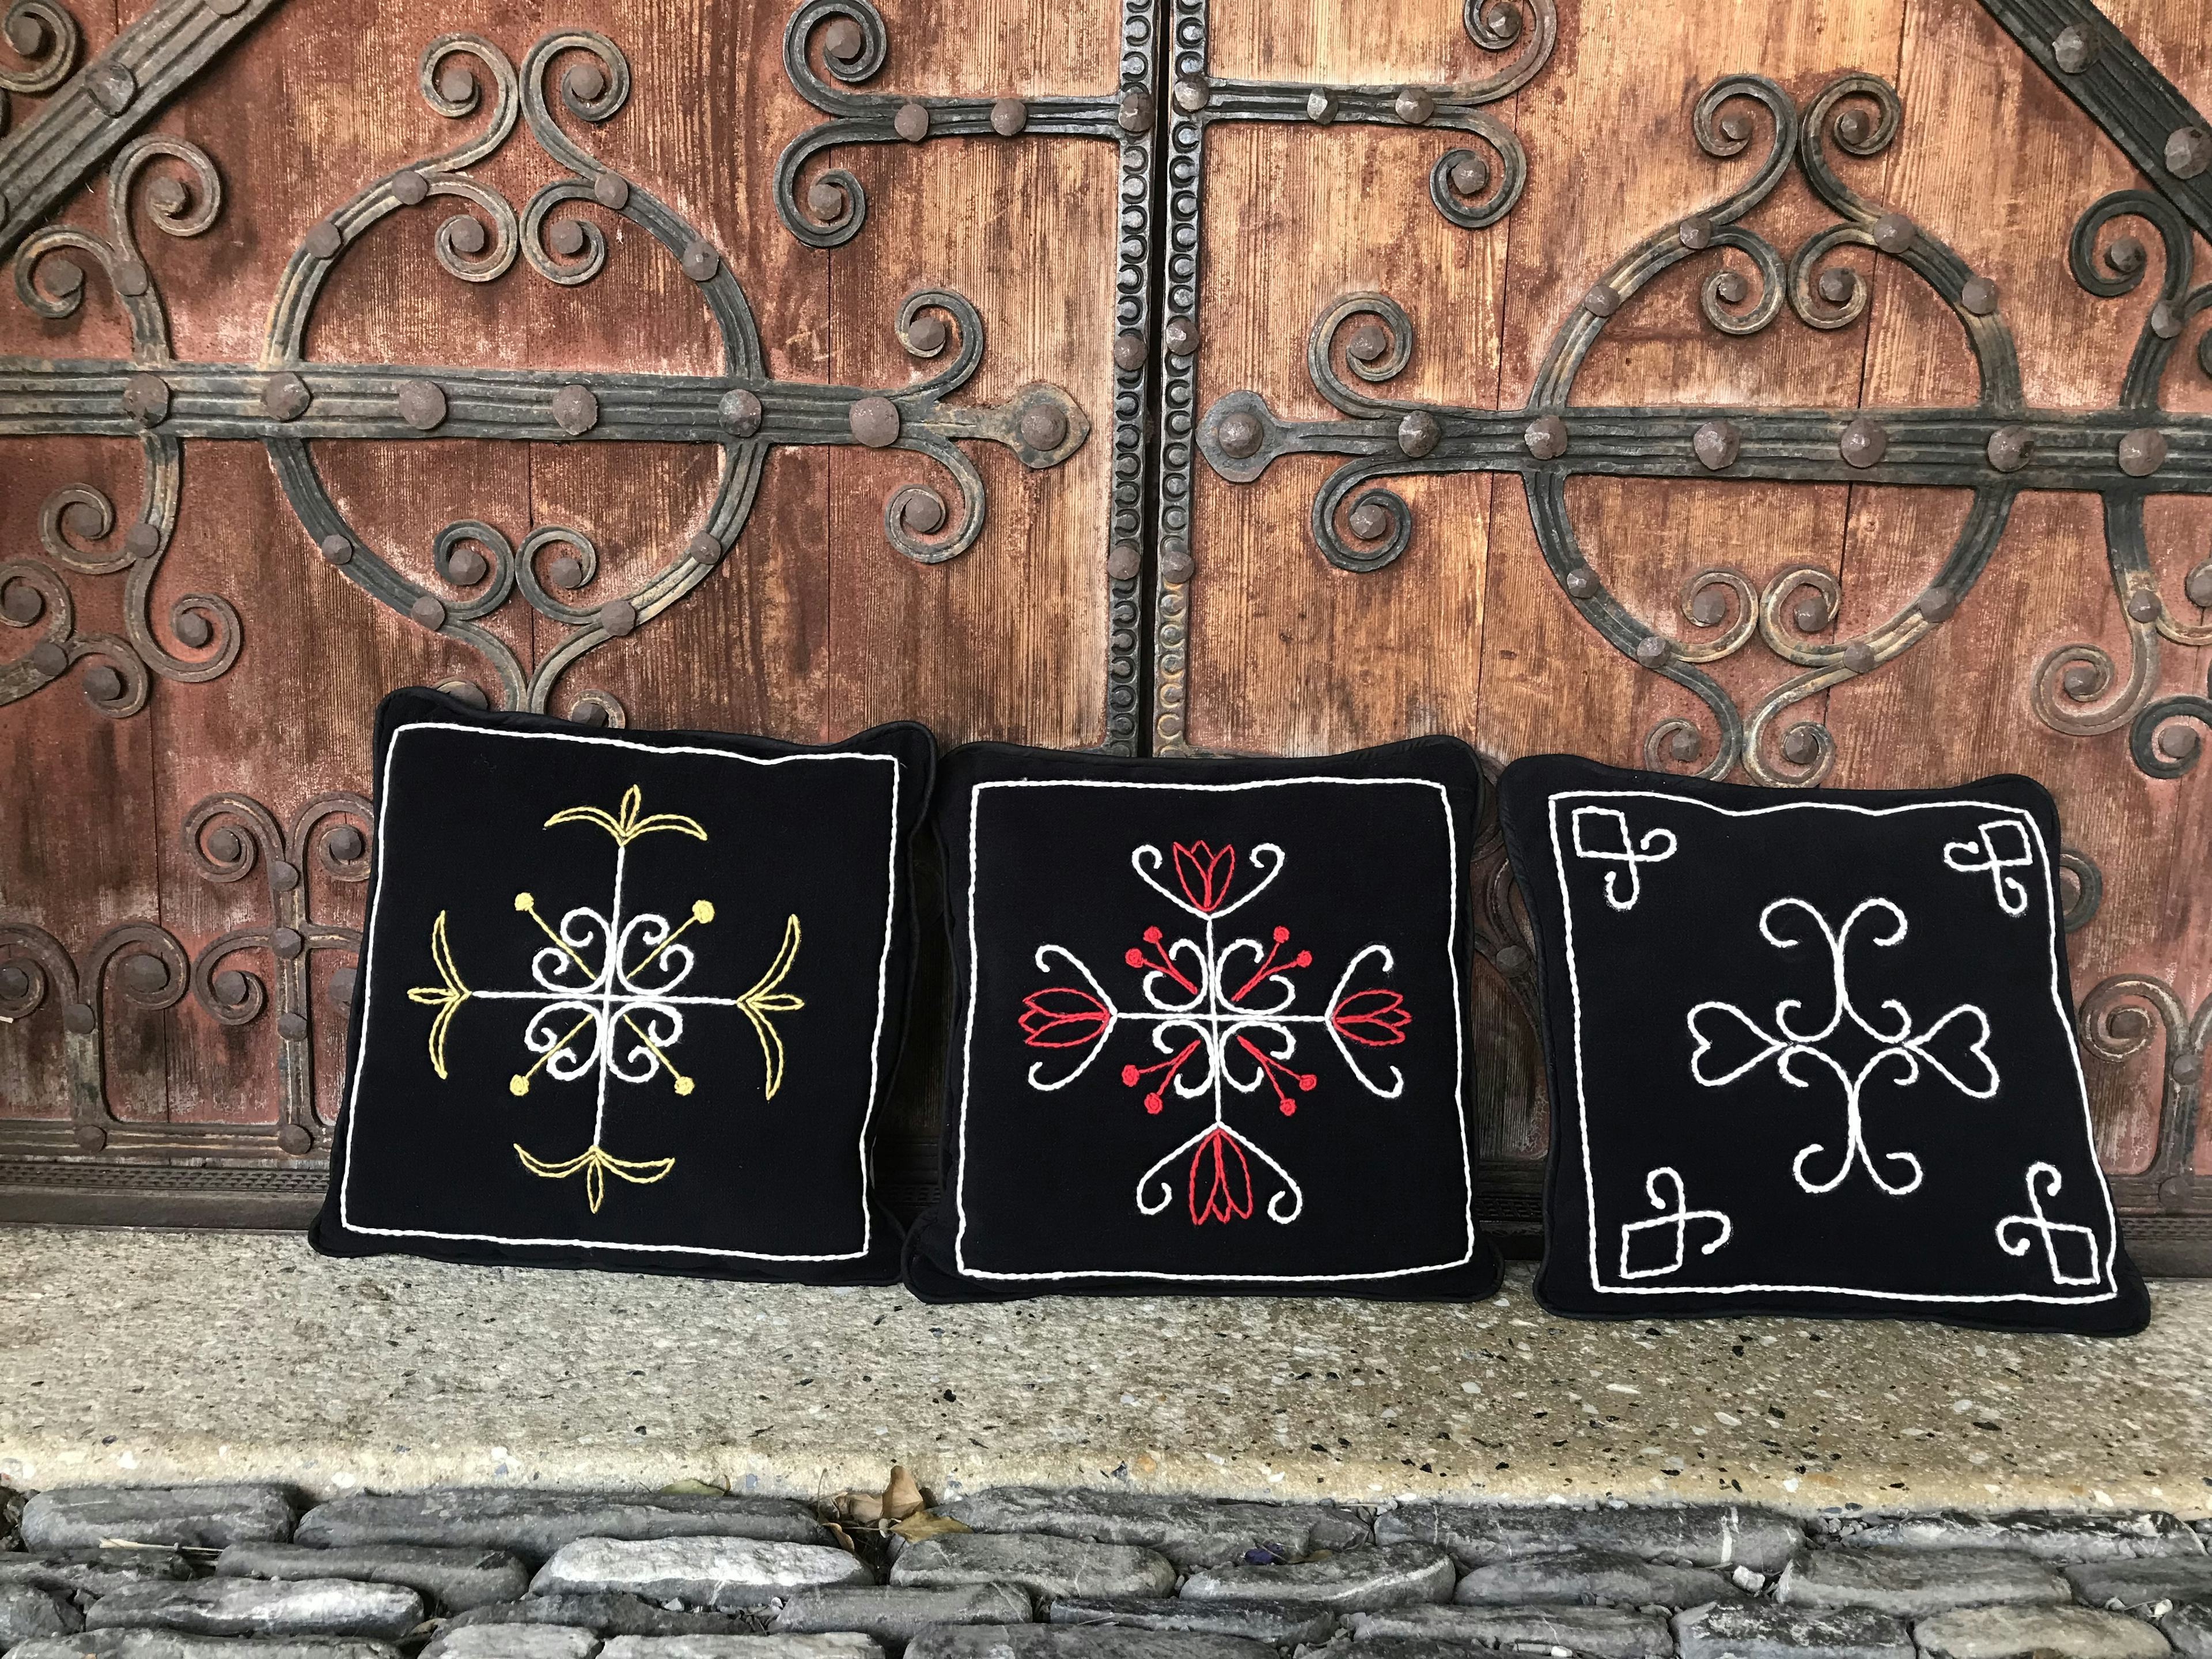 Coussins décoratifs , prodotto artigianale per la vendita diretta in Svizzera